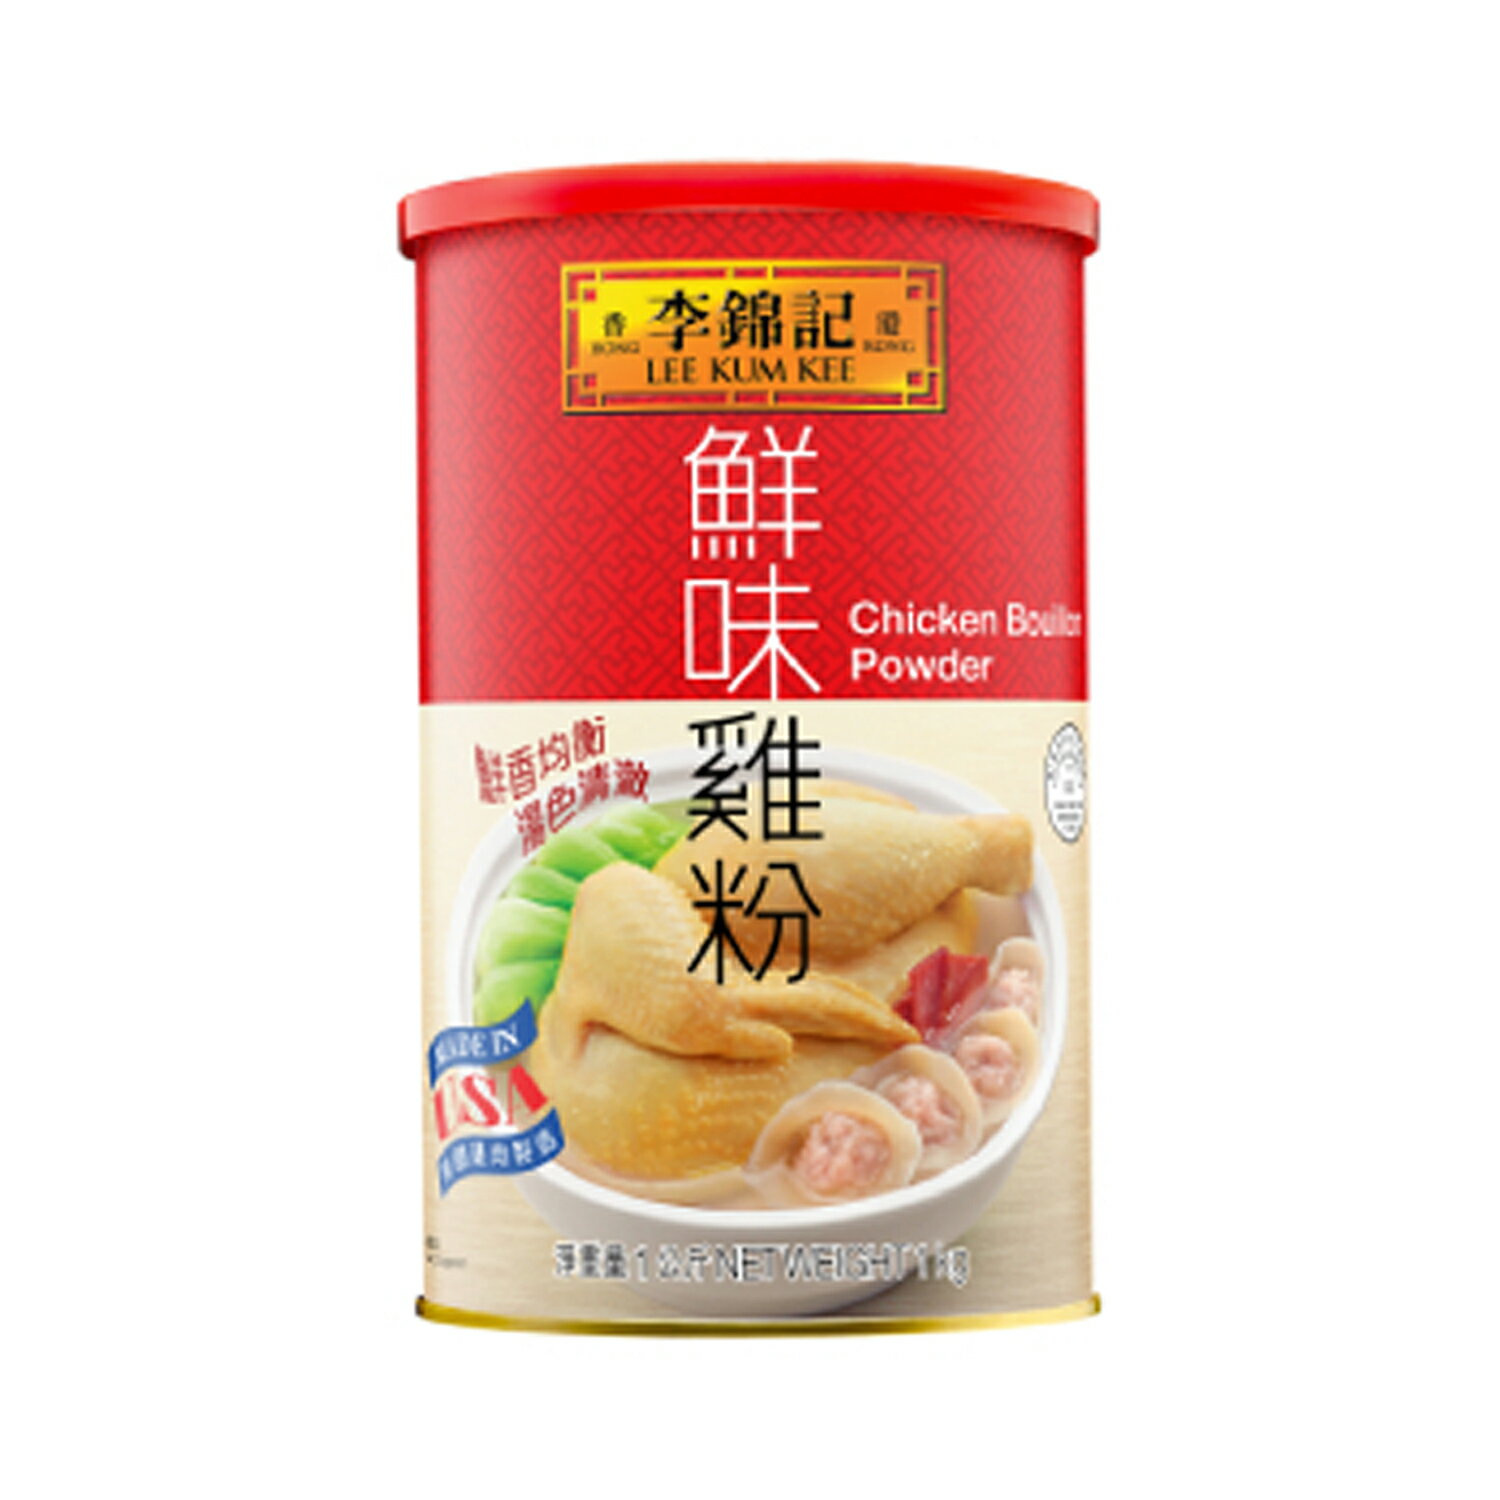 李錦記 鮮味鶏粉 1kg/本 缶 チキンパウダー 中華 調味料 業務用